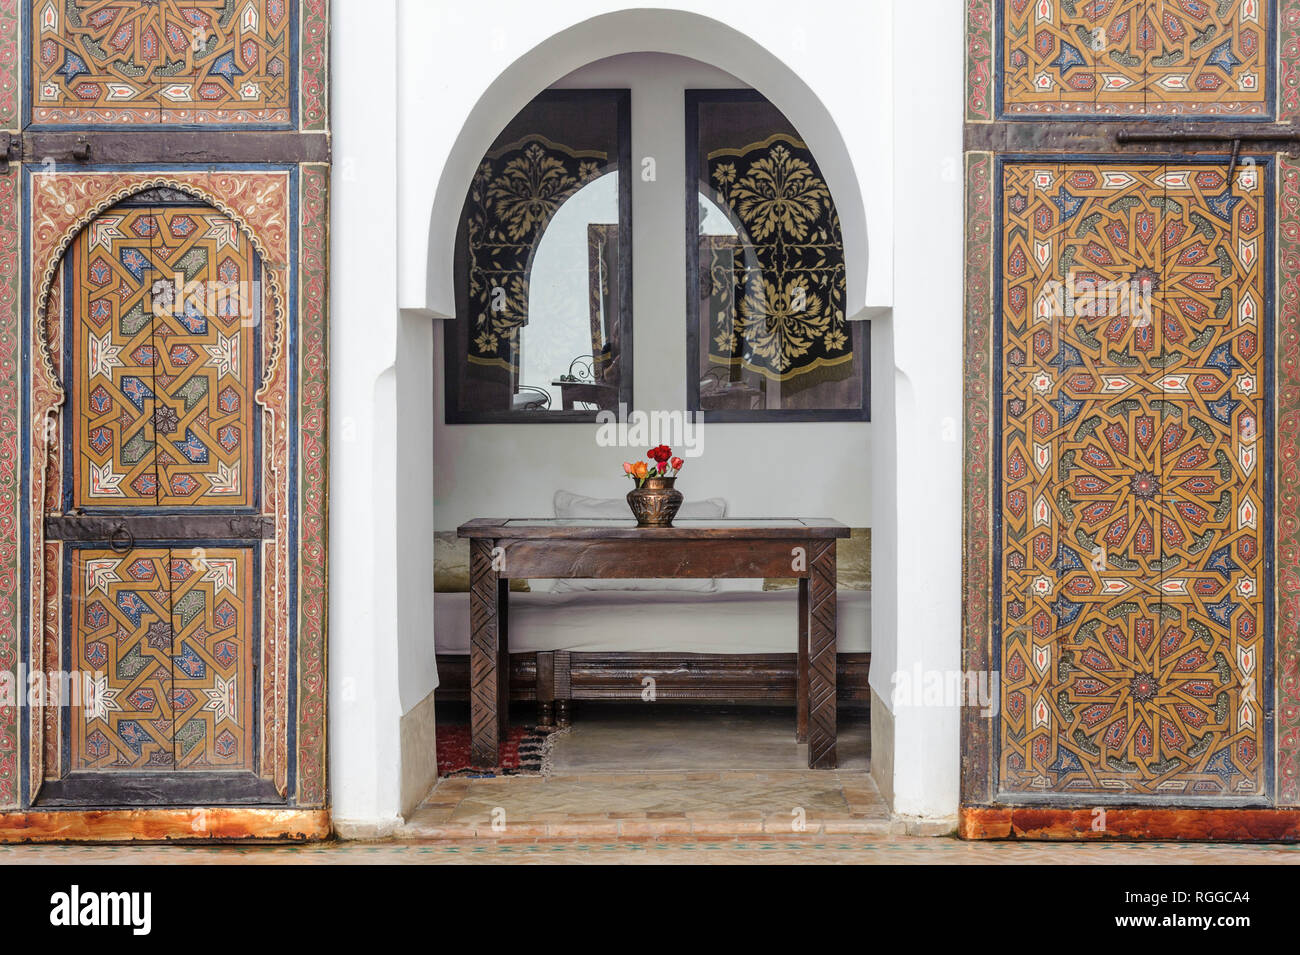 05-03-15, Marrakesch, Marokko. Das Riad Porte Royale. Der Salon, der Innenhof und der Hinter riesigen alten Türen. Foto: © Simon Grosset Stockfoto